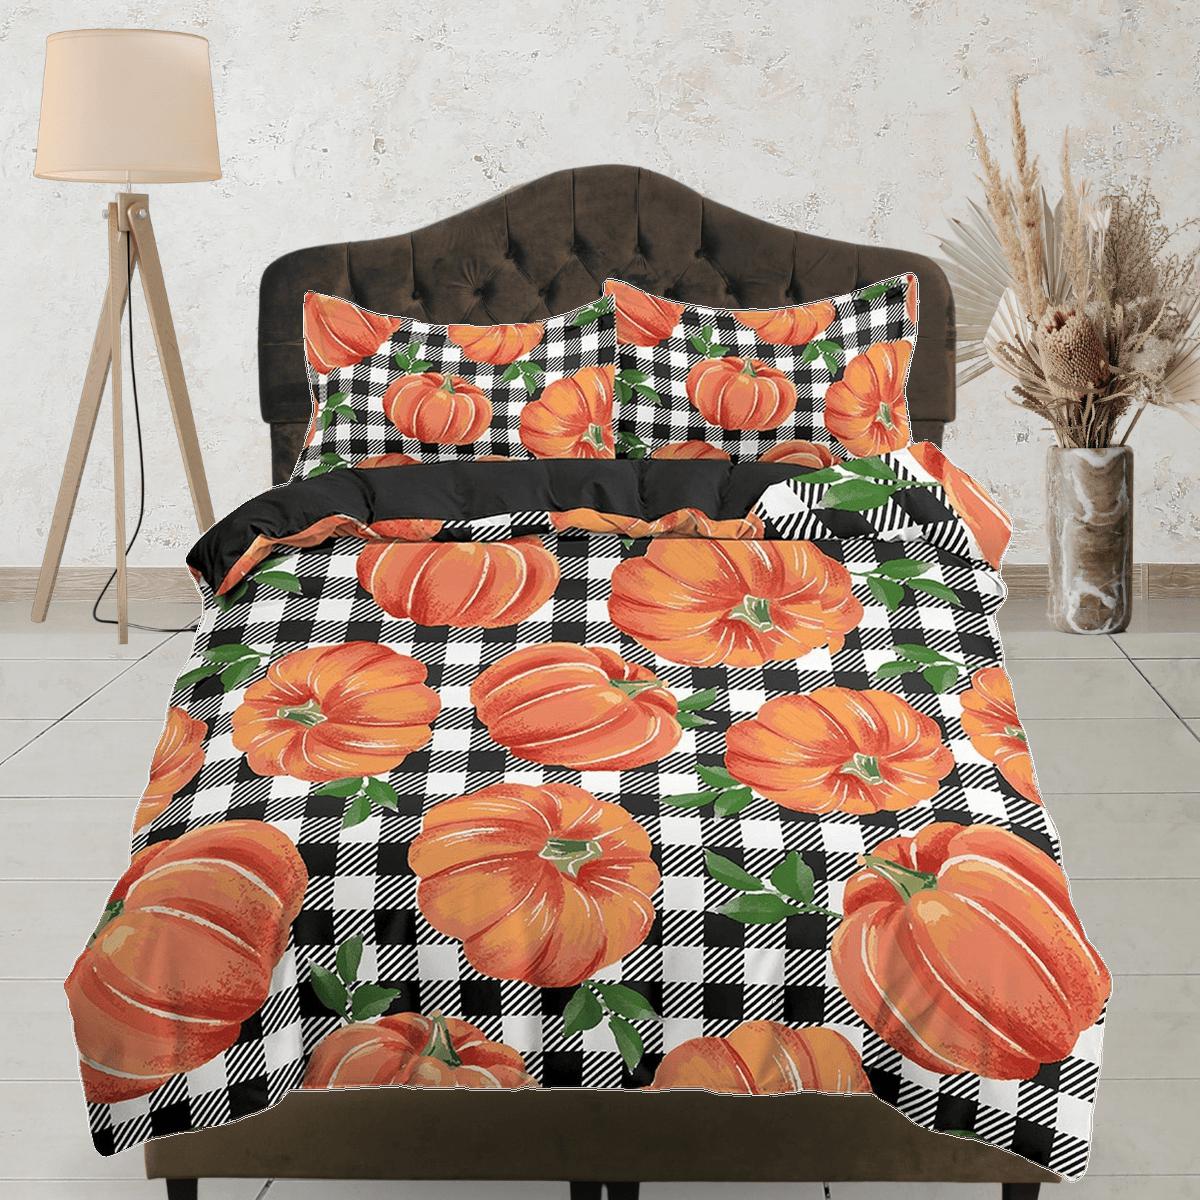 daintyduvet Gingham plaid pumpkin halloween full size bedding & pillowcase, check duvet cover set dorm bedding, nursery toddler bedding, halloween gift